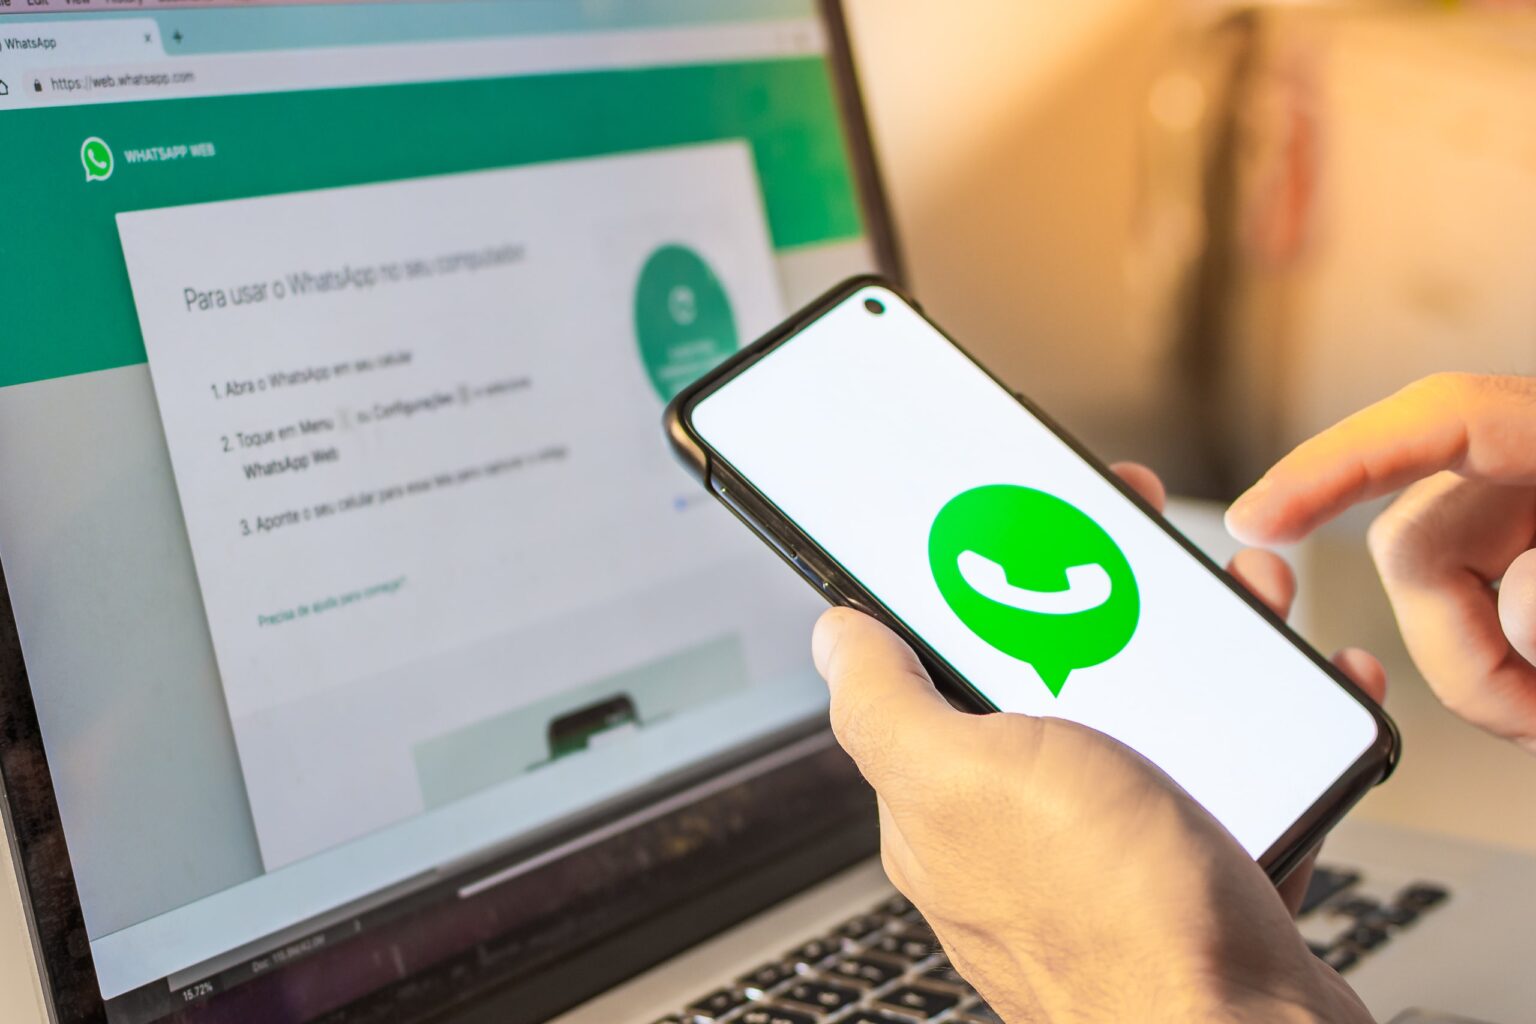 WhatsApp clonado: o que fazer se for vítima e como prevenir golpes